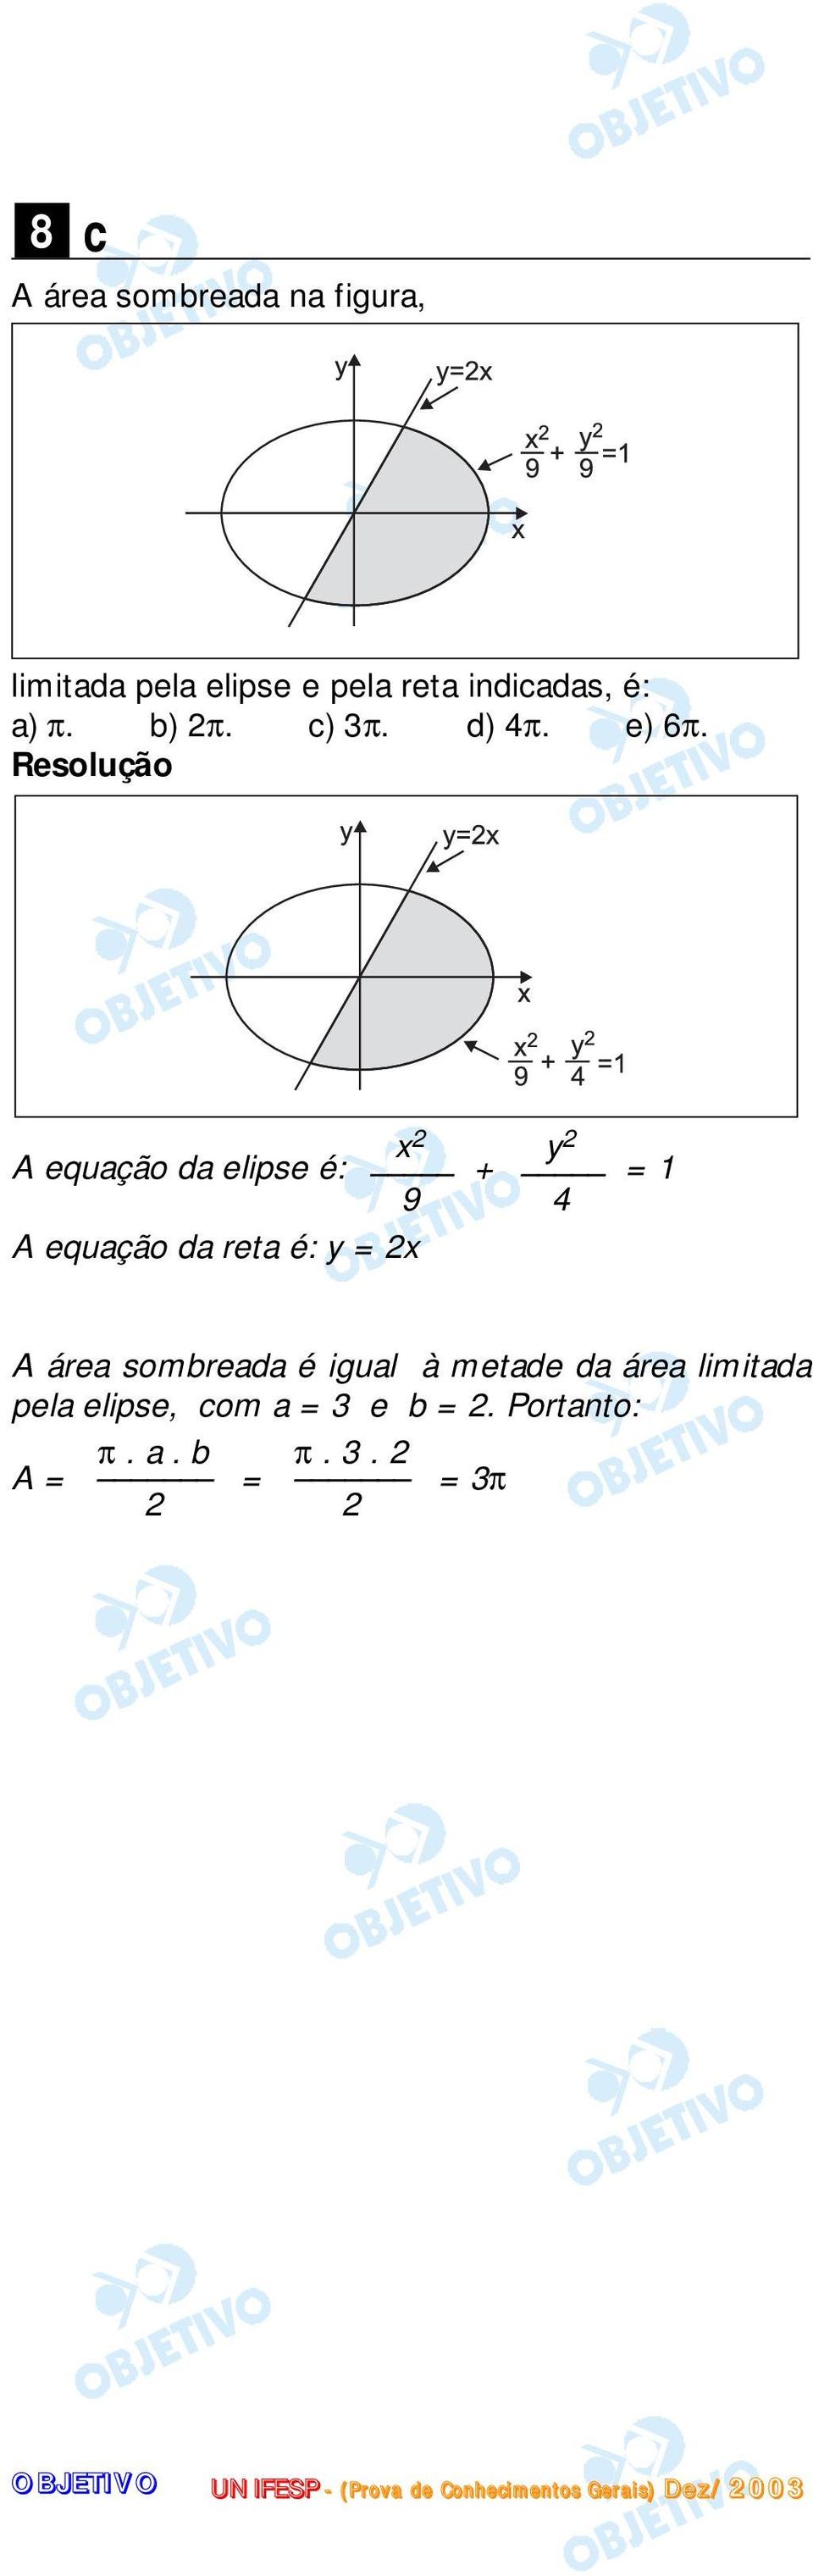 A equação da elipse é: + = 1 9 4 x 2 A equação da reta é: y = 2x y 2 A área